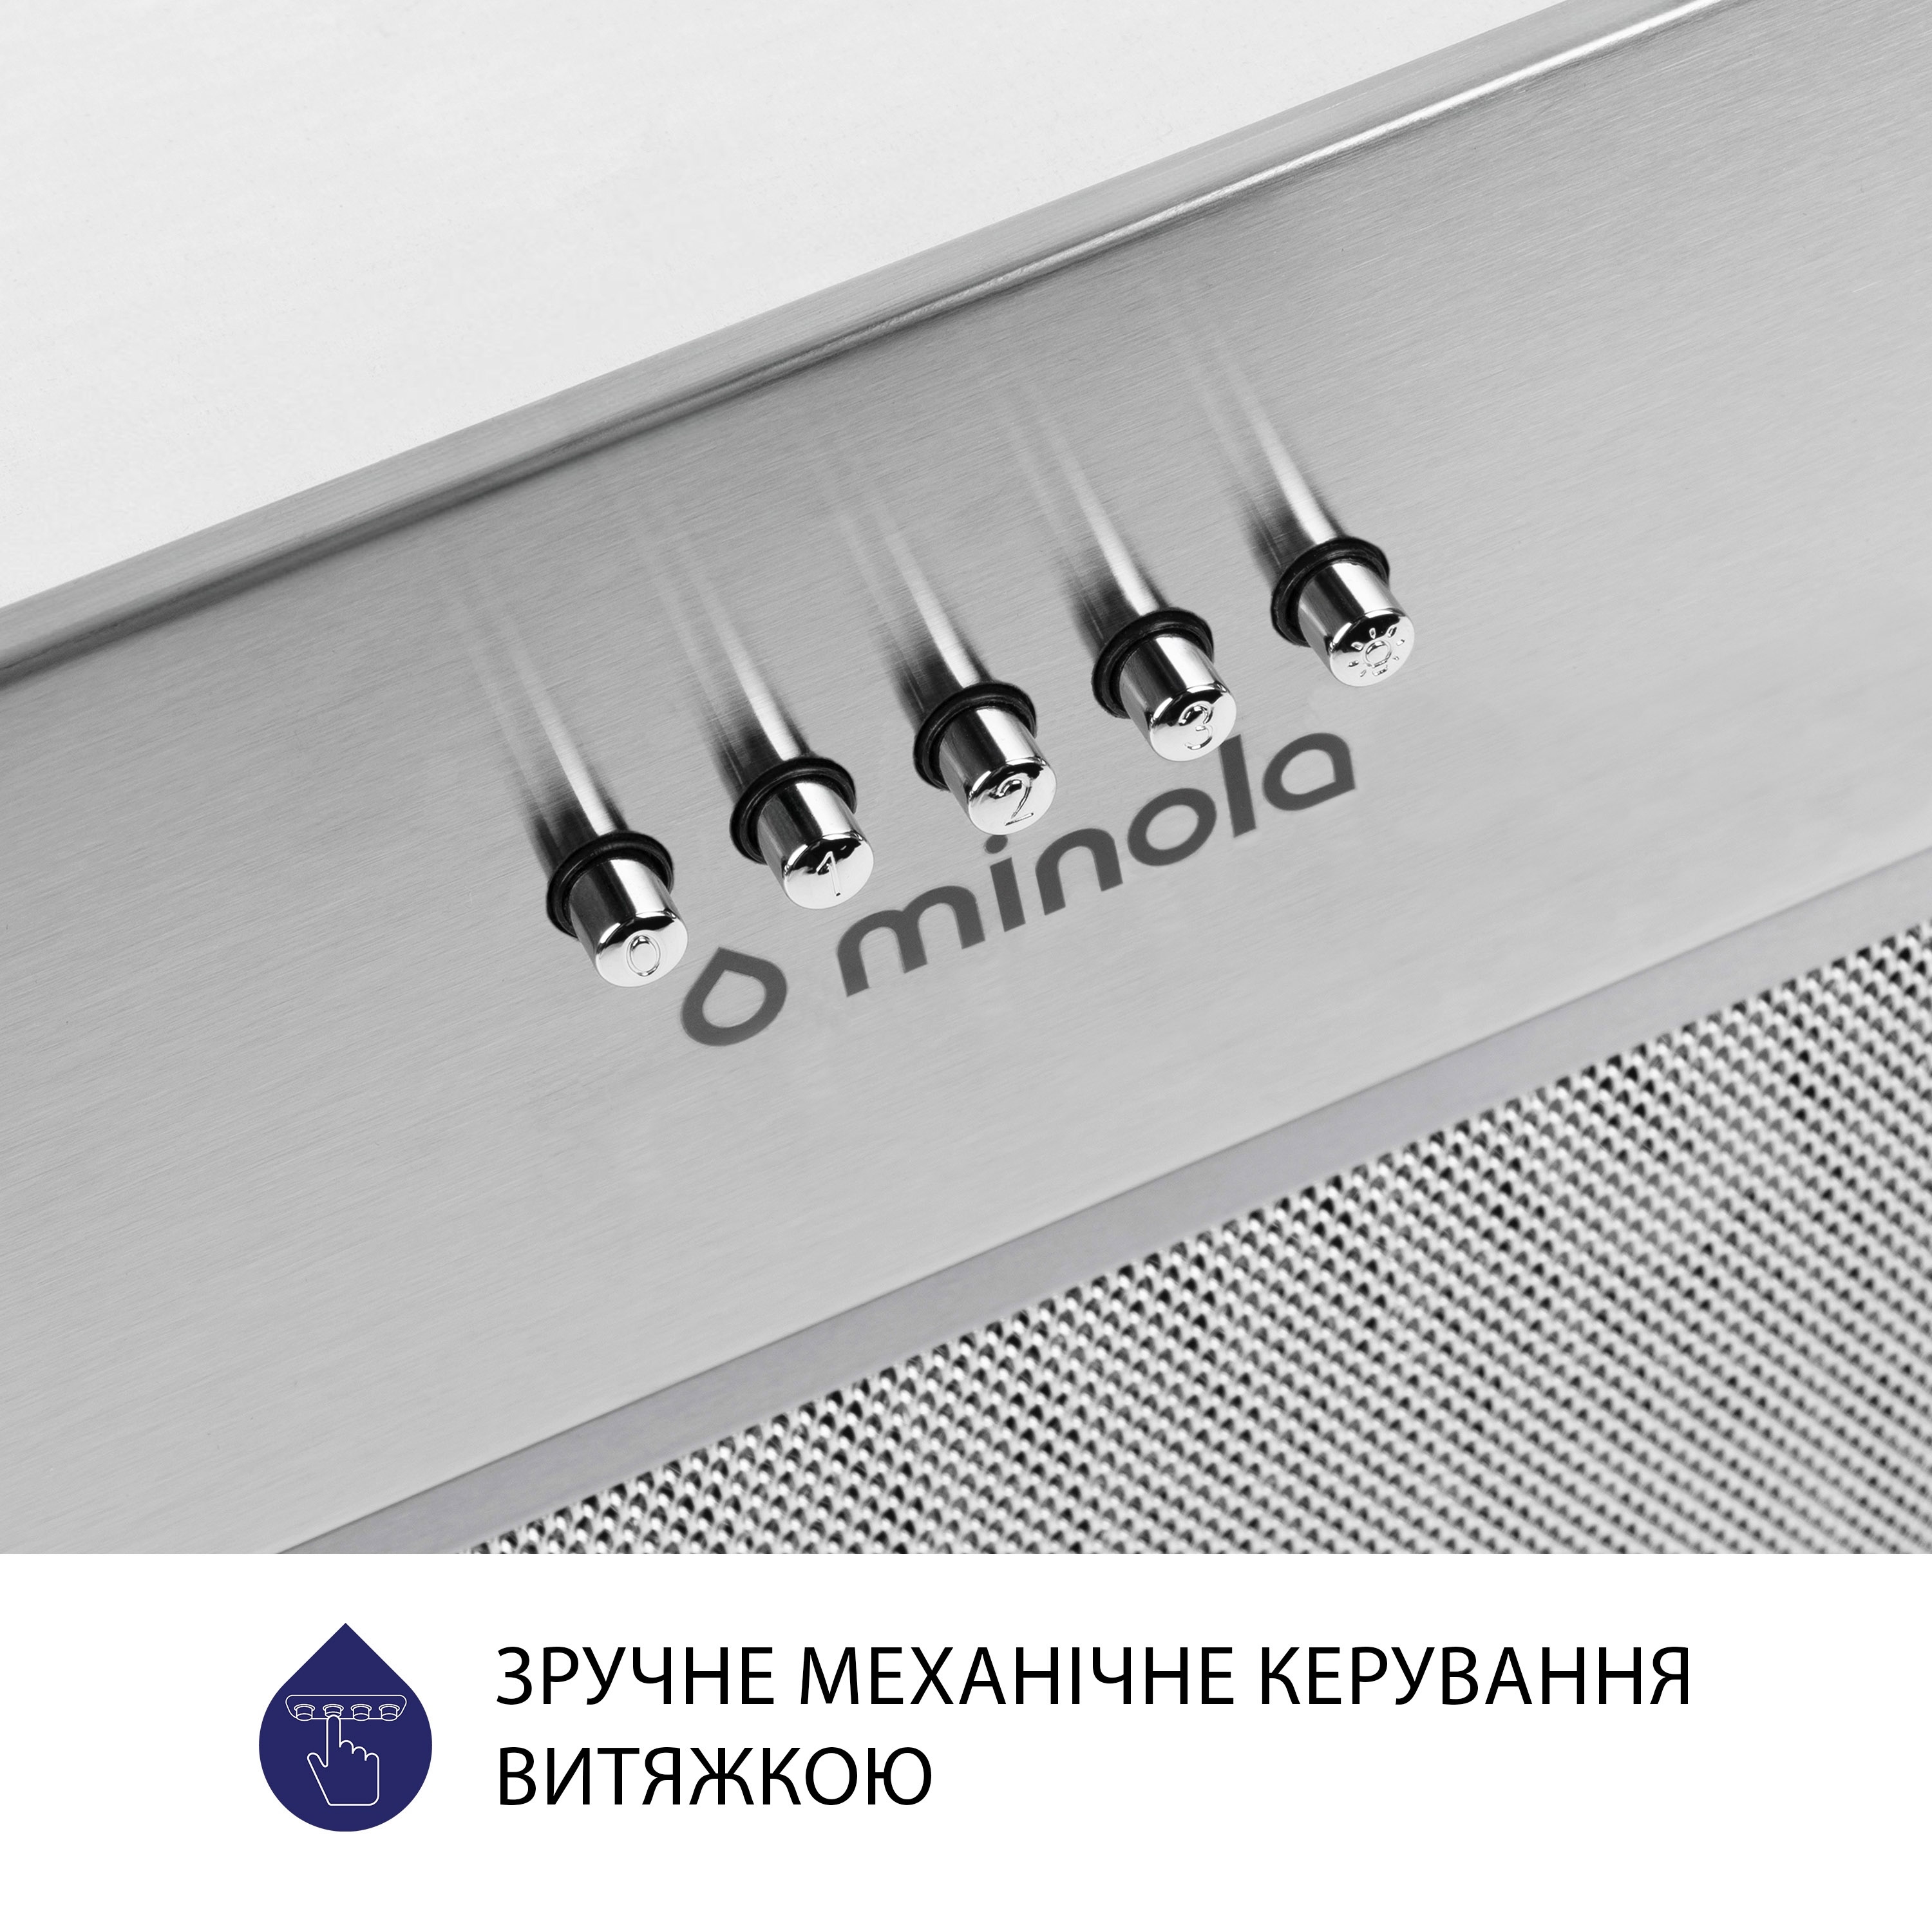 Витяжка кухонная полновстраиваемая Minola HBI 5827 I 1200 LED инструкция - изображение 6